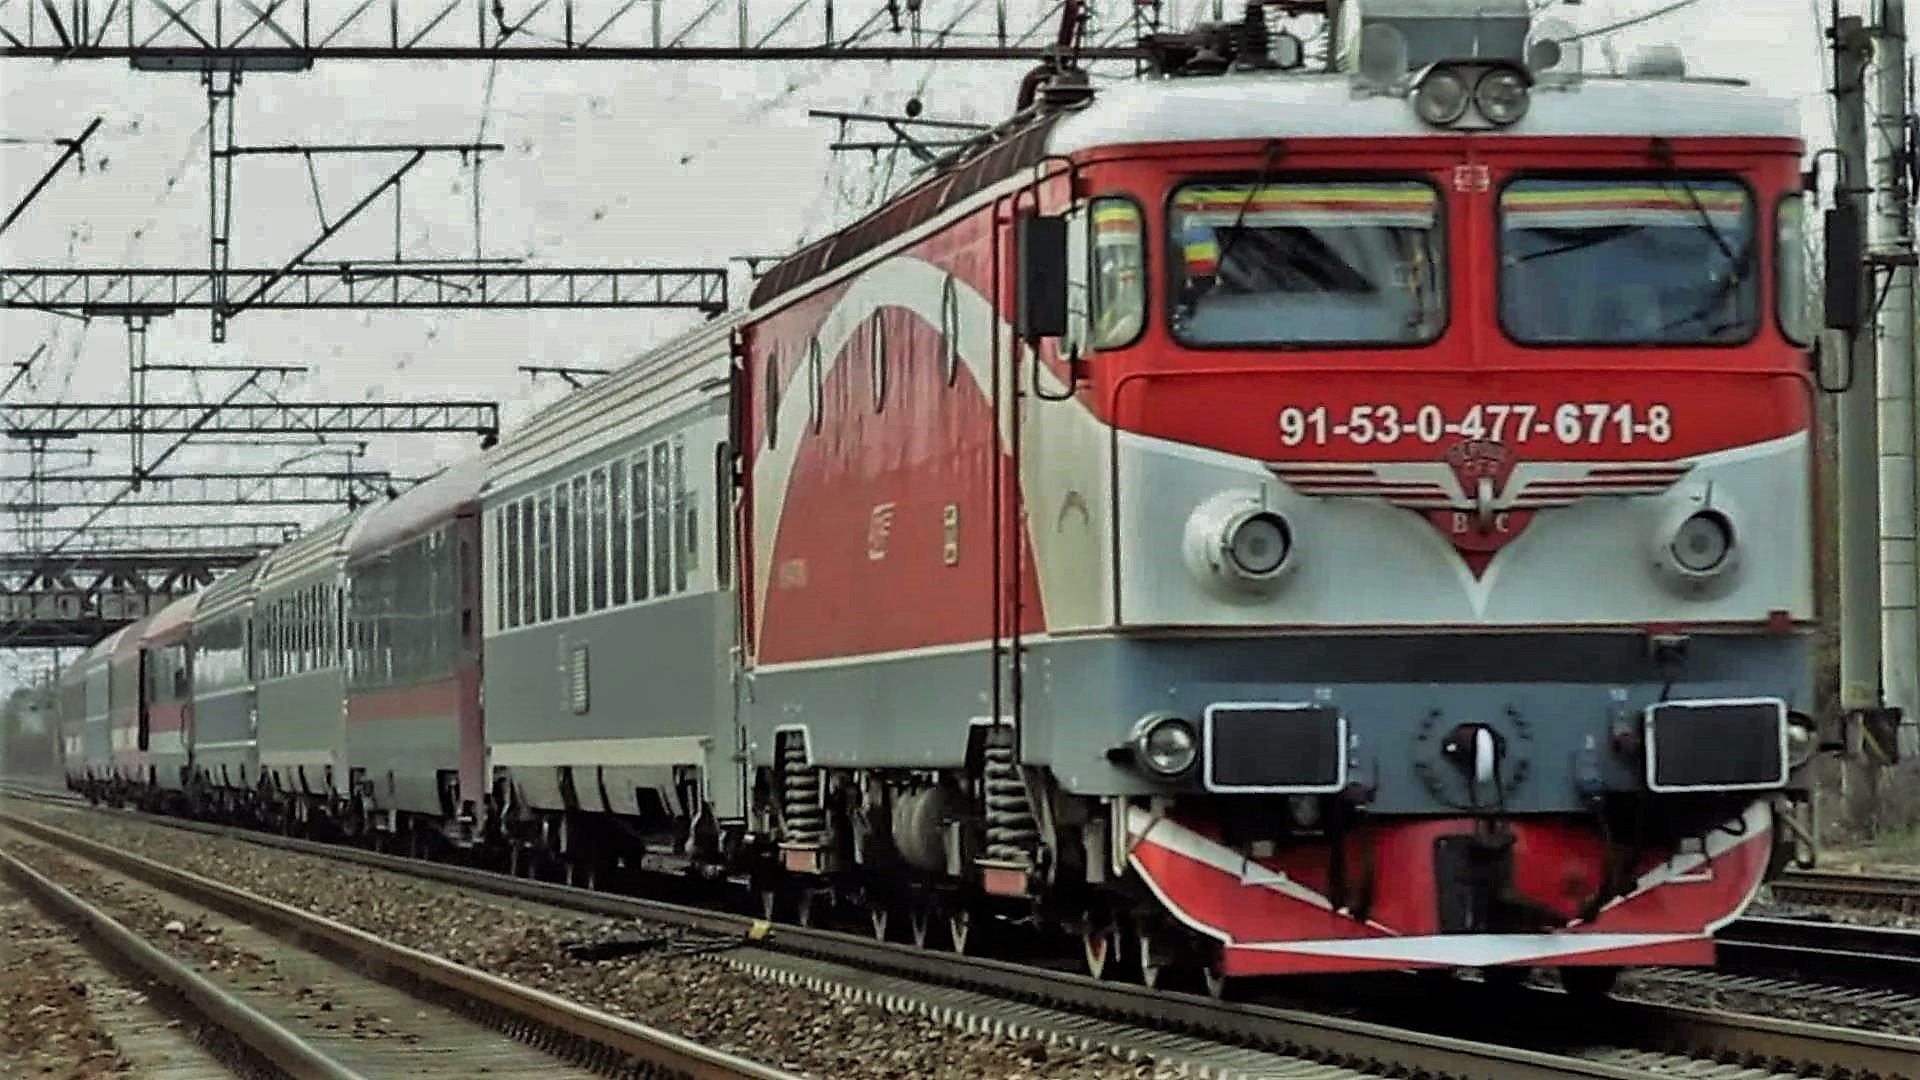 Trafic feroviar întrerupt pe Magistrala 900 Craiova – Drobeta Turnu Severin: care este cauza